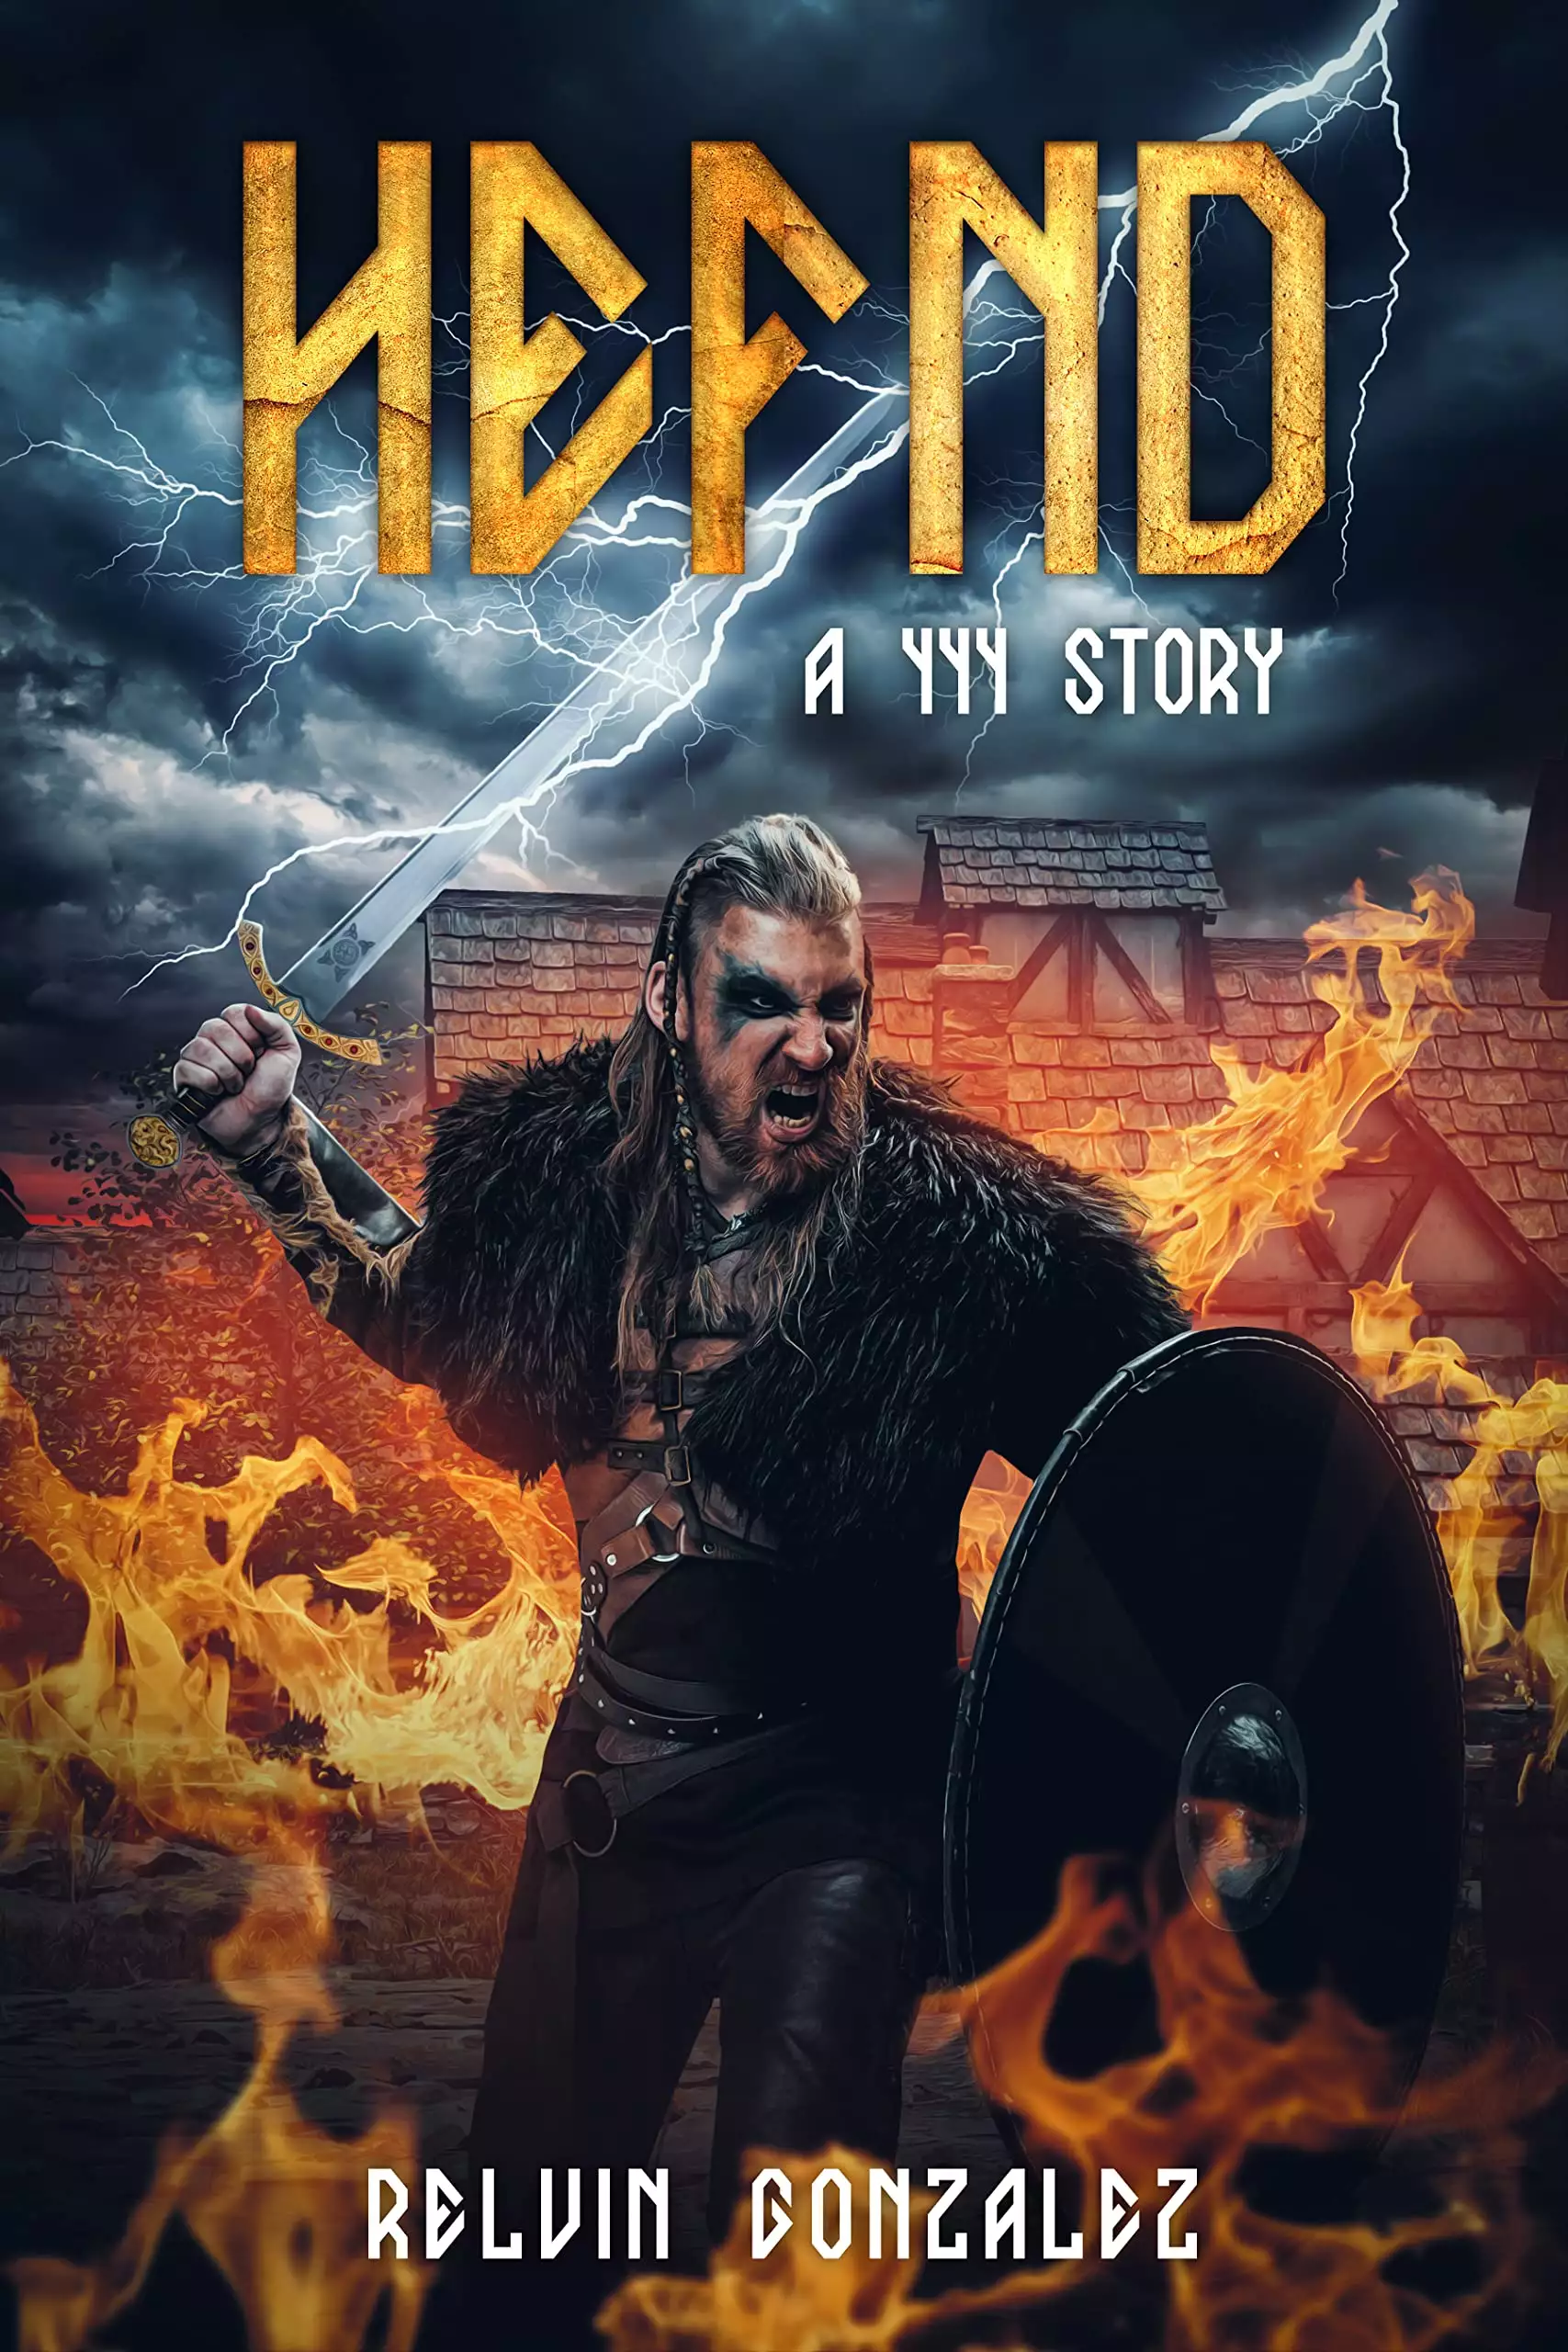 Hefnd: A Viking Revenge Historical Fiction Fantasy Novelette